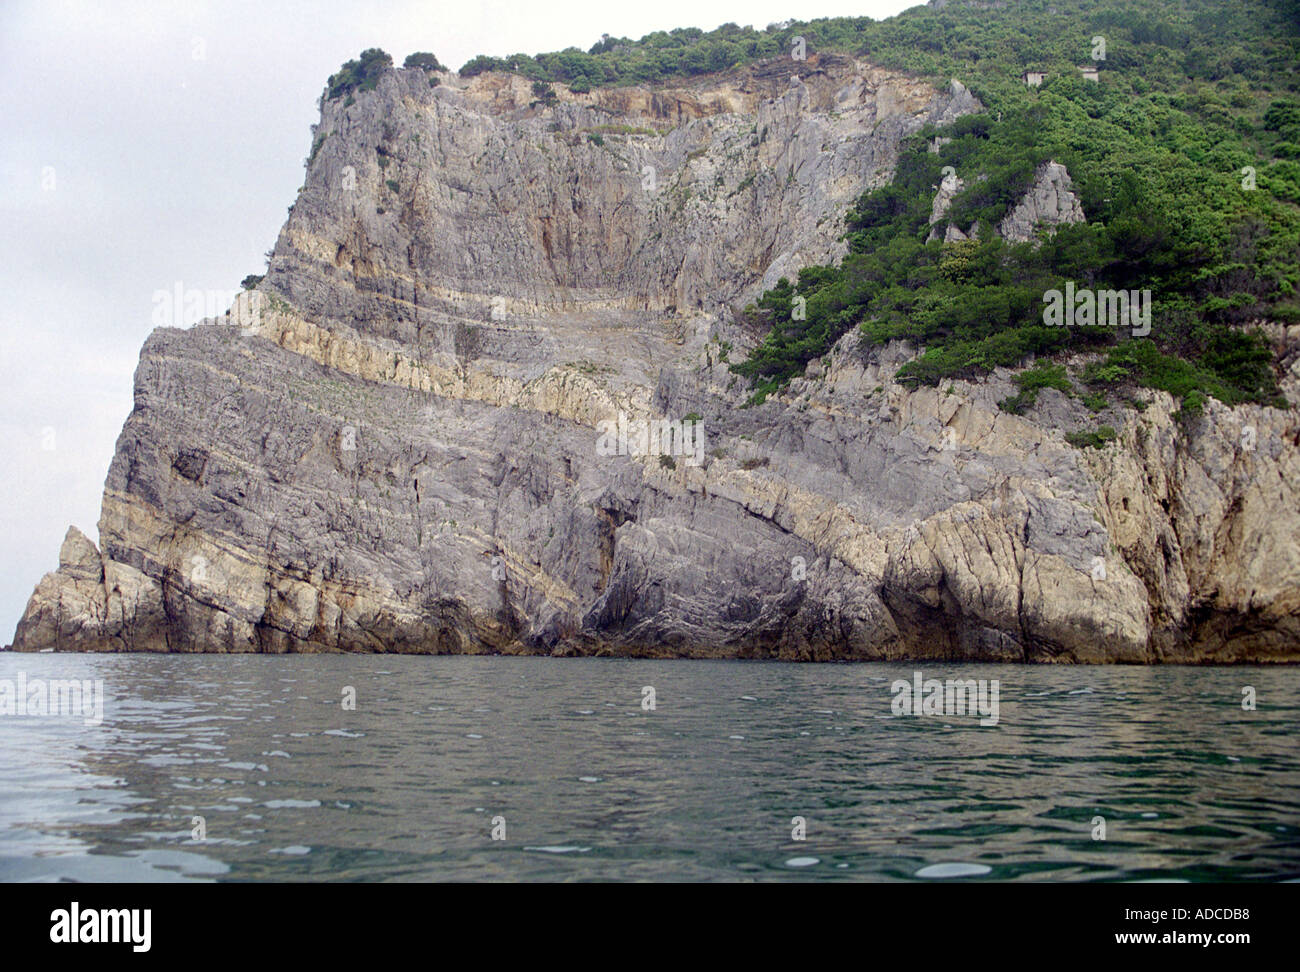 Isola di Palmeria, Cinque Terre, Italy Stock Photo